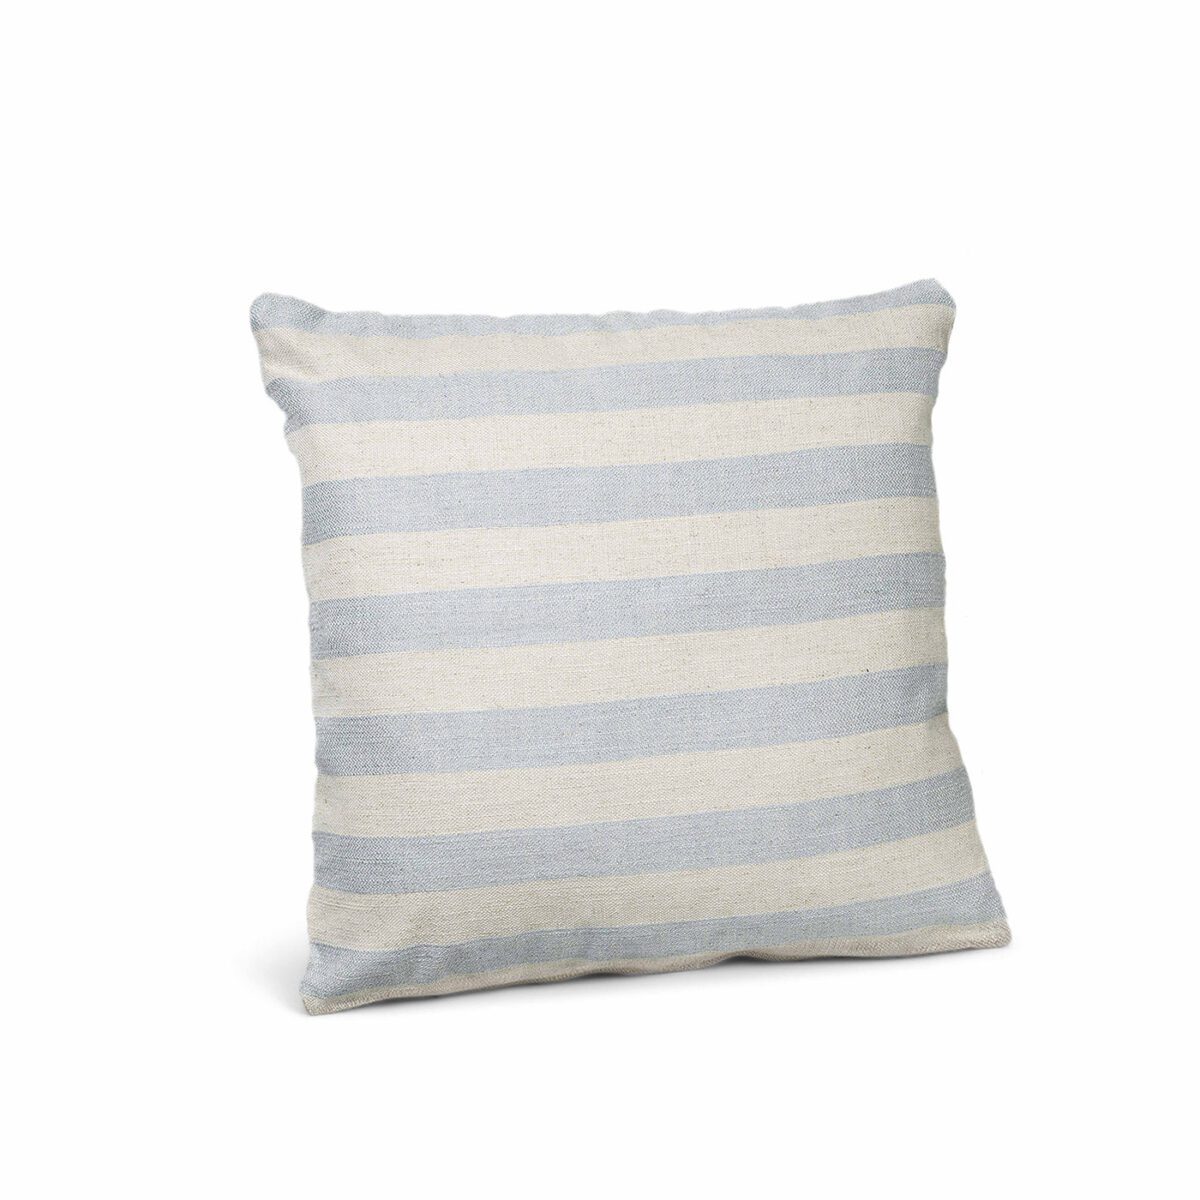 Cushion Cover Stripe Blue